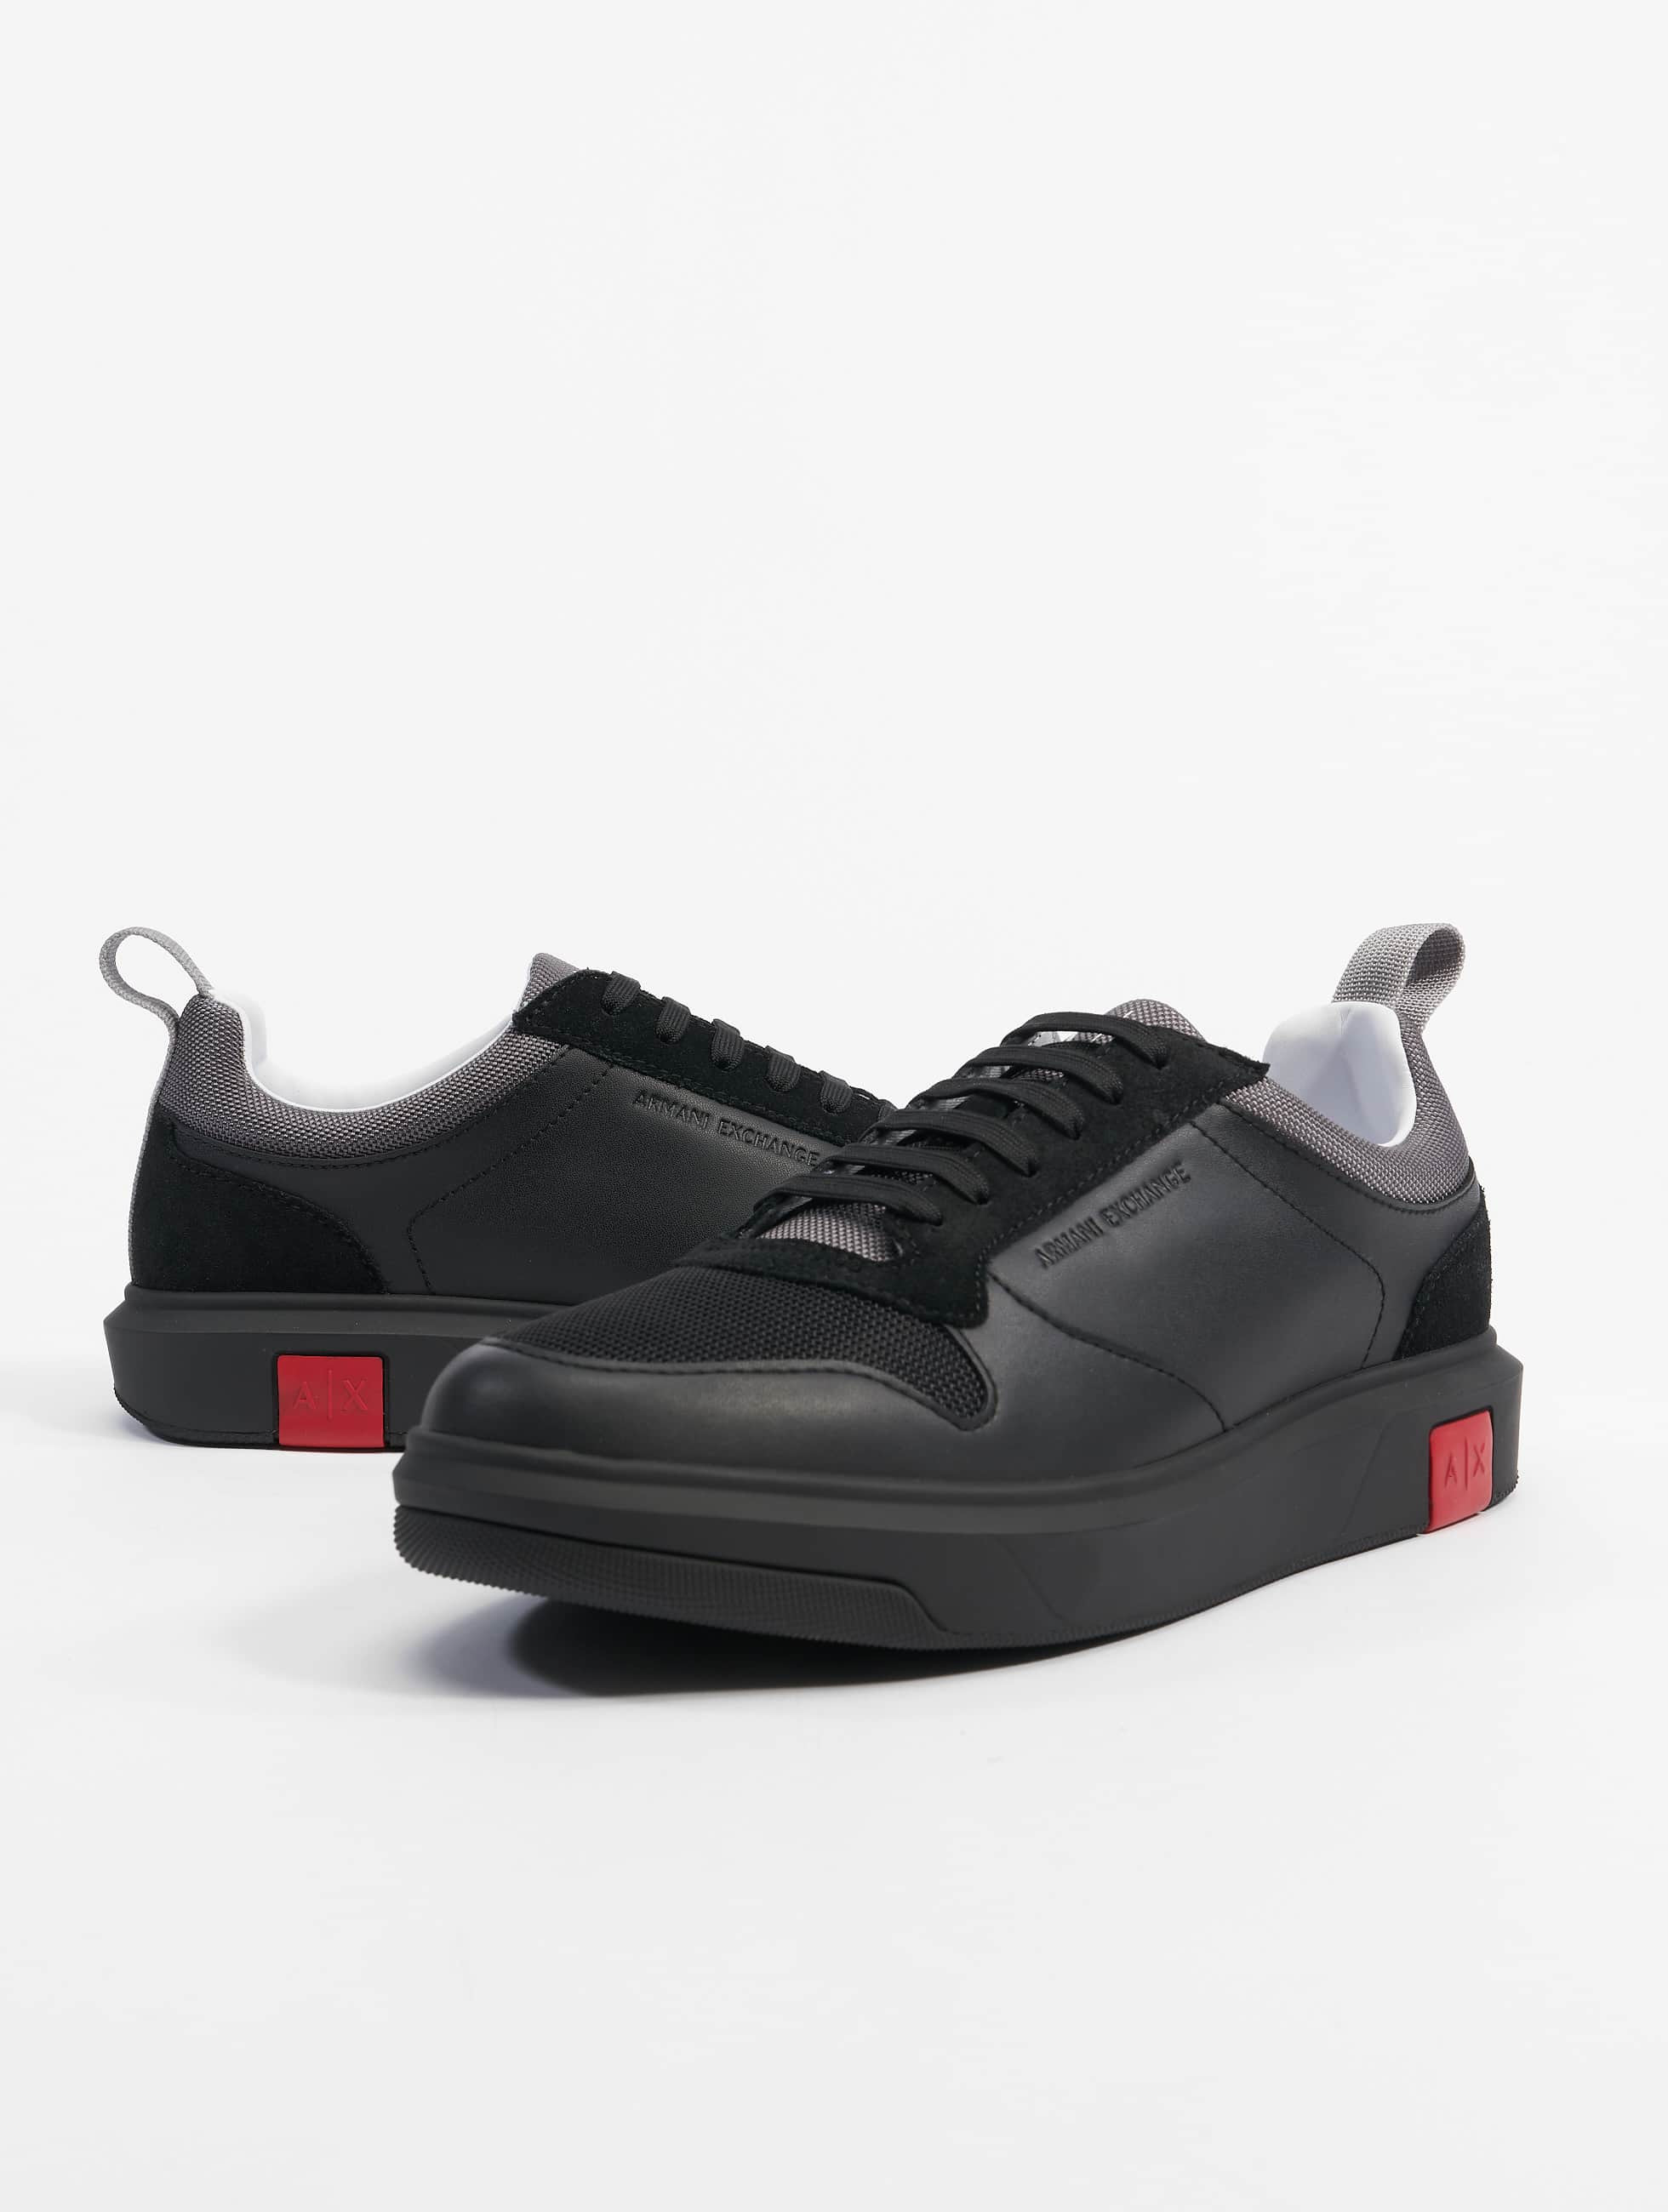 vloeistof Besparing Zich voorstellen Armani schoen / sneaker Armani in zwart 904053